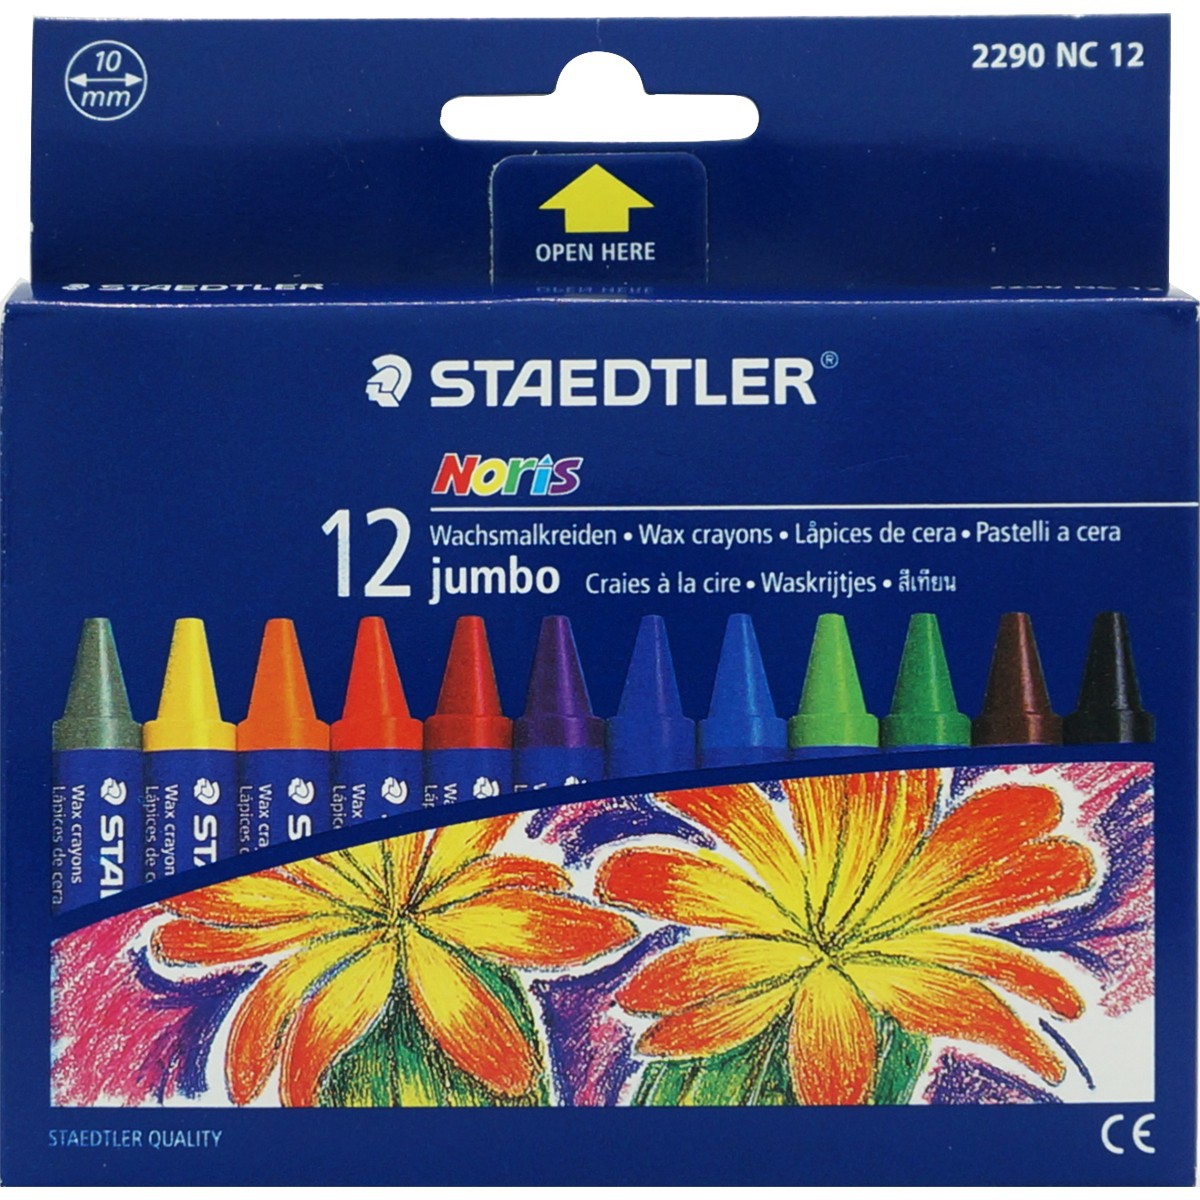 STAEDTLER Crayons, STAEDTLER "Noris Jumbo 229", 8 different  colours